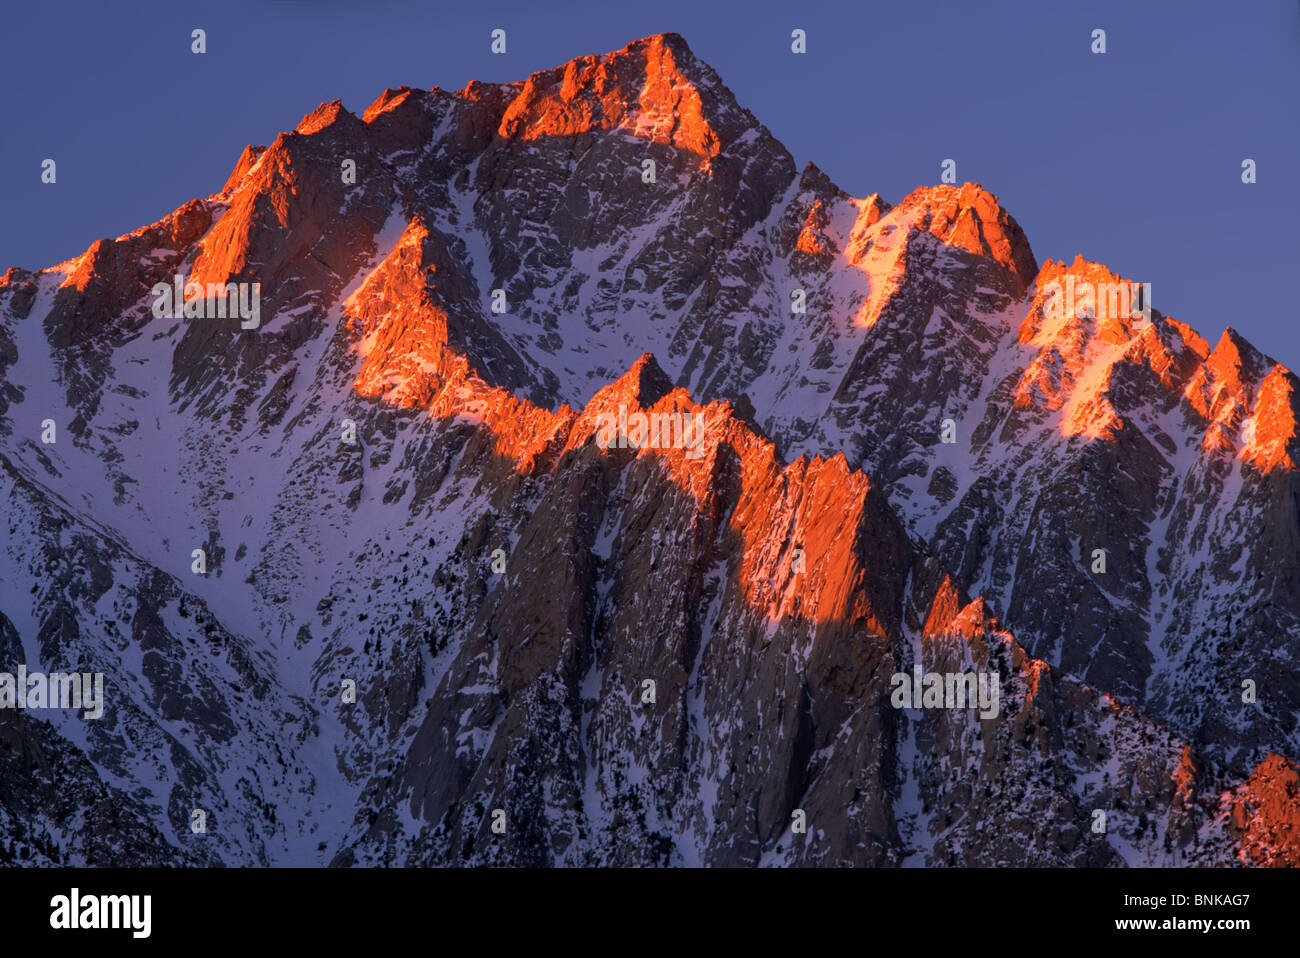 Lone Pine Peak in the Sierra Nevada range in California Stock Photo